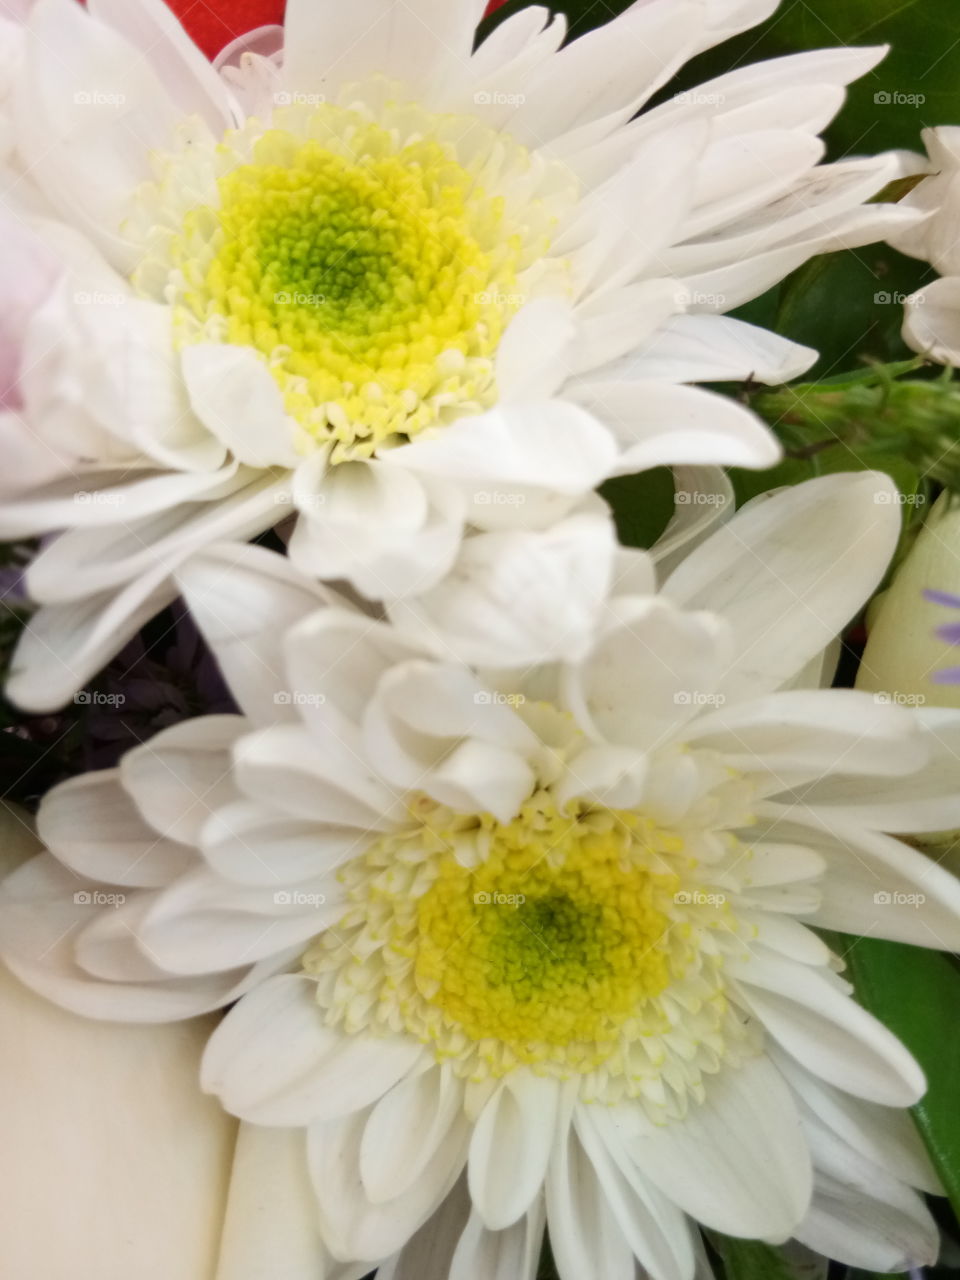 flower
white